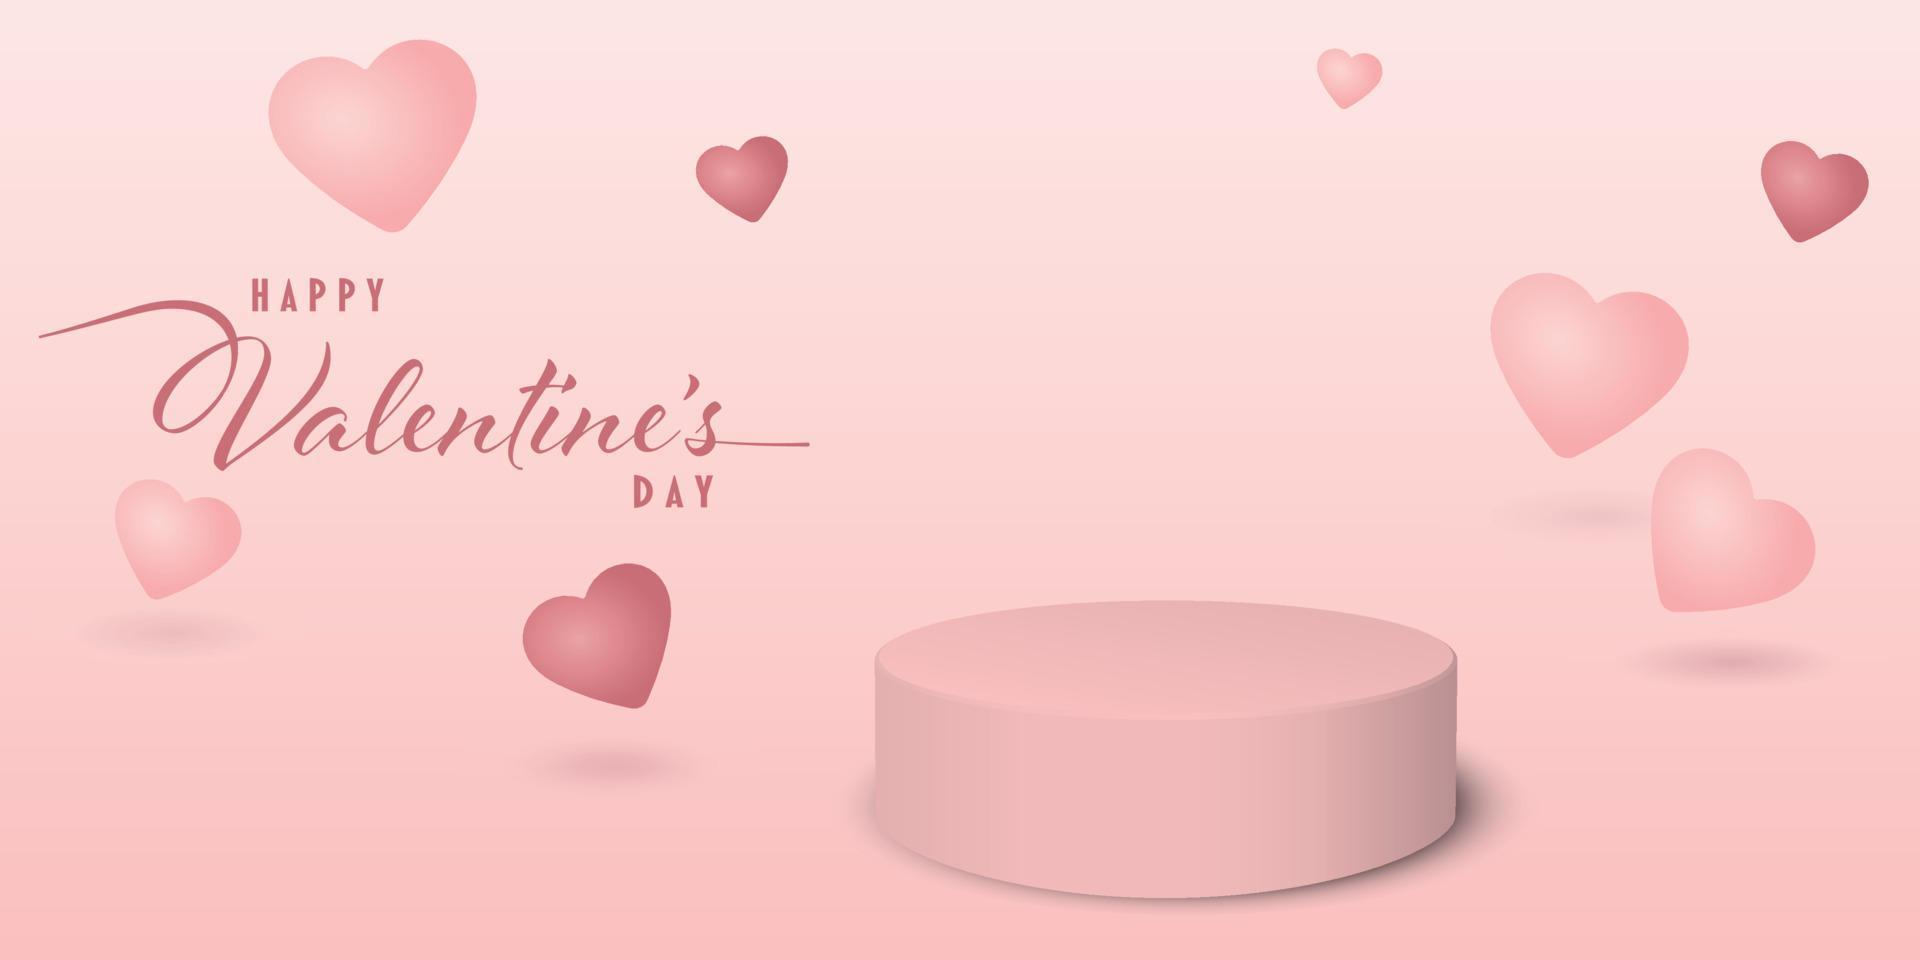 feliz día de san valentín con podio en blanco para la presentación del producto y globos de corazón rosa flotando sobre fondo rosa. tarjeta de felicitación del día de san valentín. vector